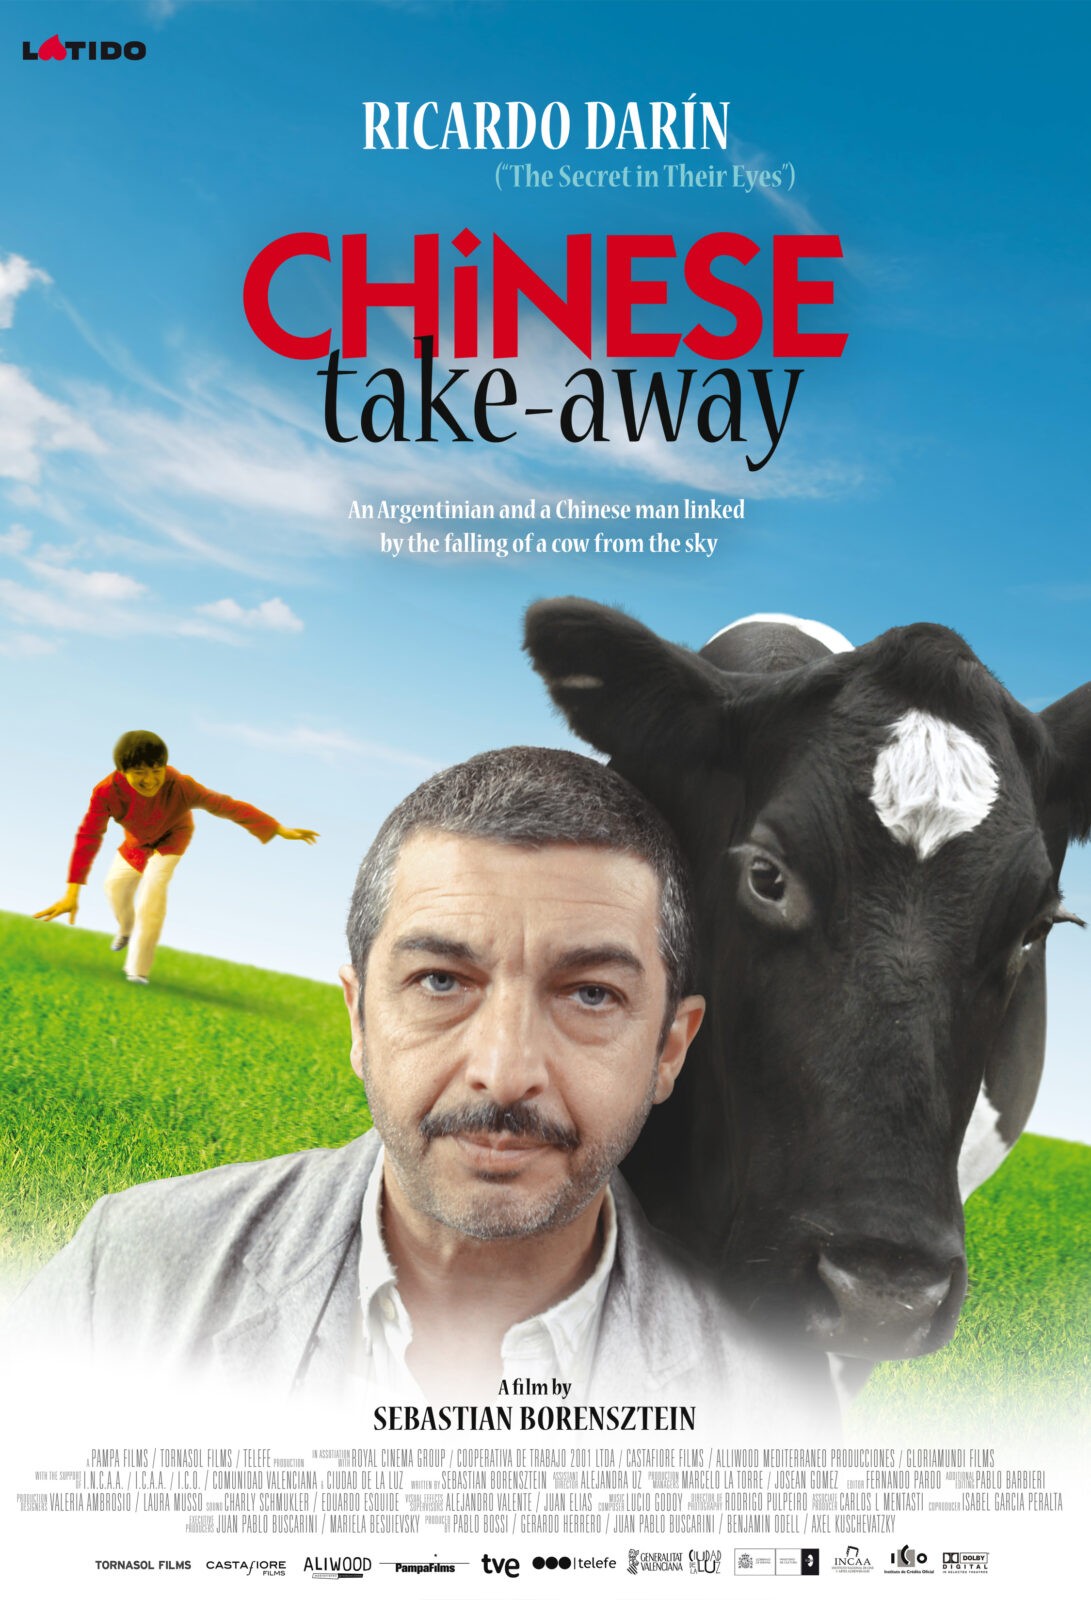 CHINESE TAKE-AWAY